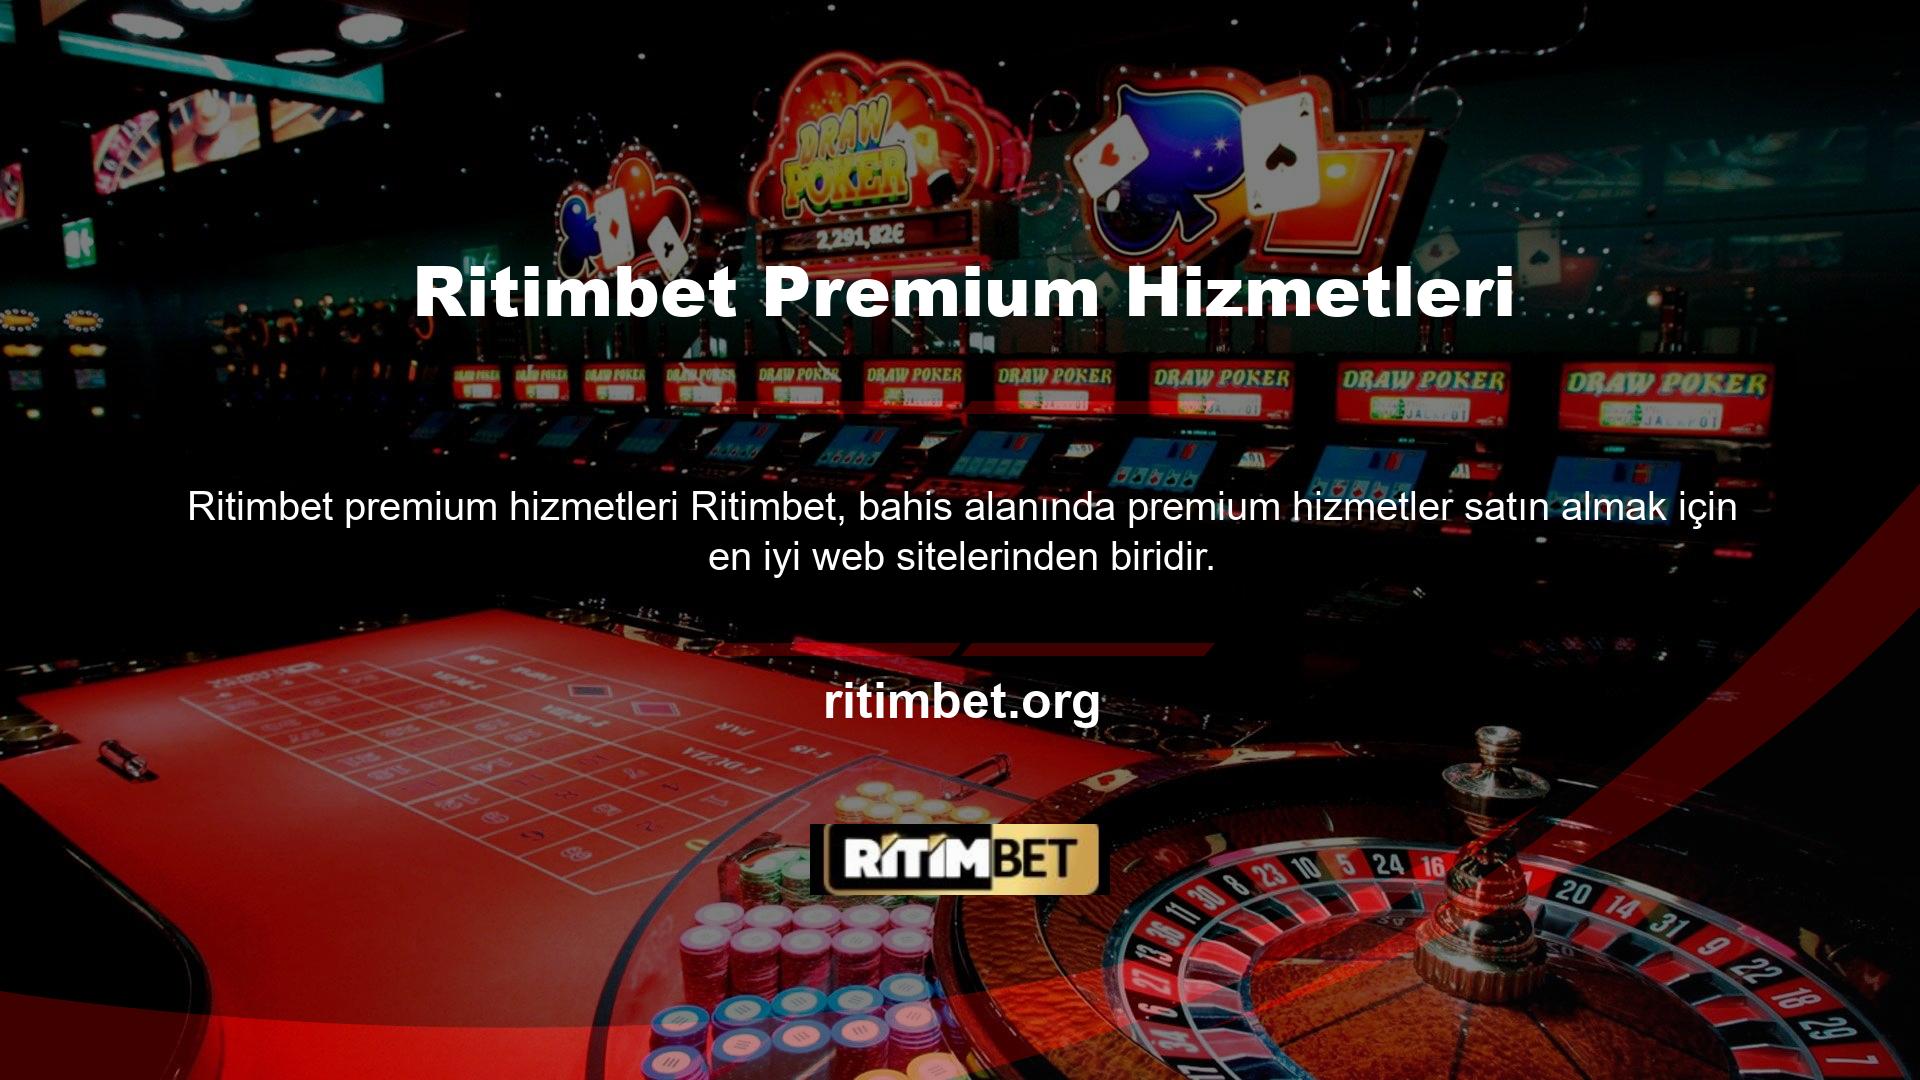 Aslında, Ritimbet web sitesini dijital alanın bir numaralı oyuncusu yapan kesinlikle çok kazançlı bir platformdur